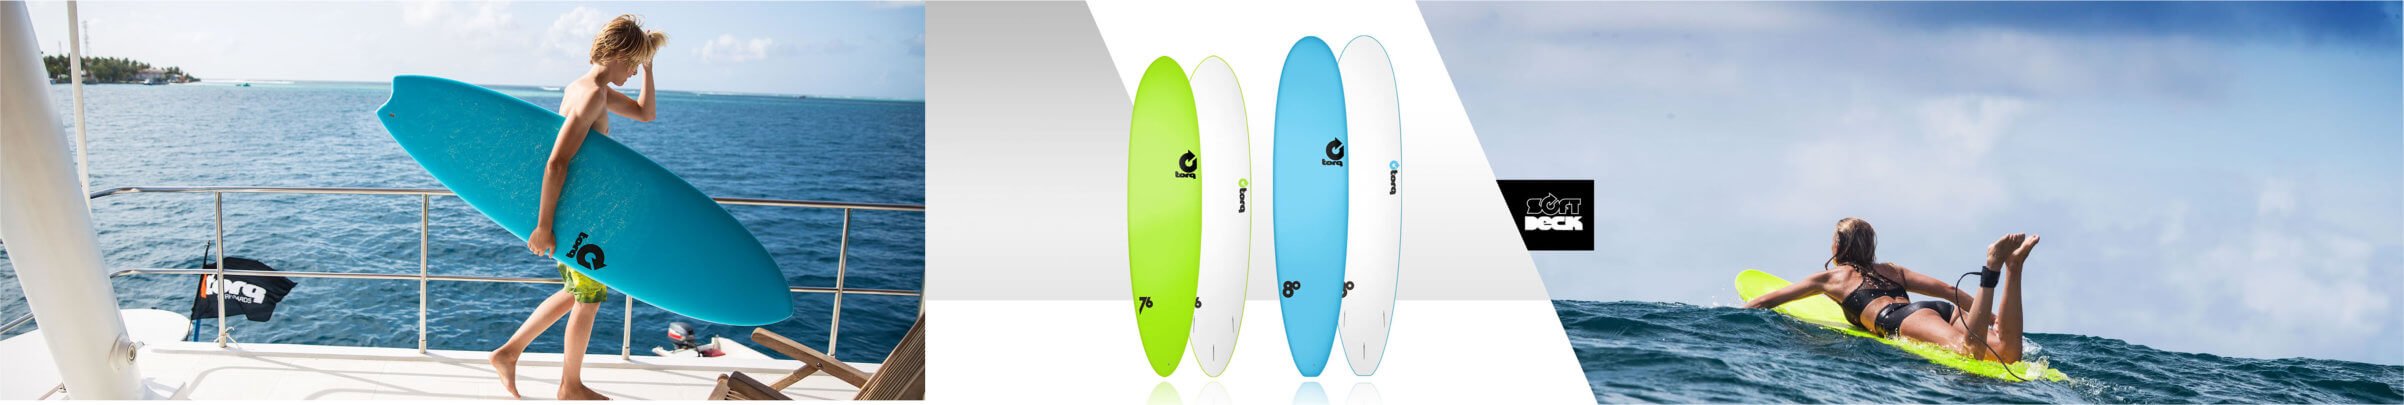 Foamie Surfboards Foam & Soft Board beginner friendly